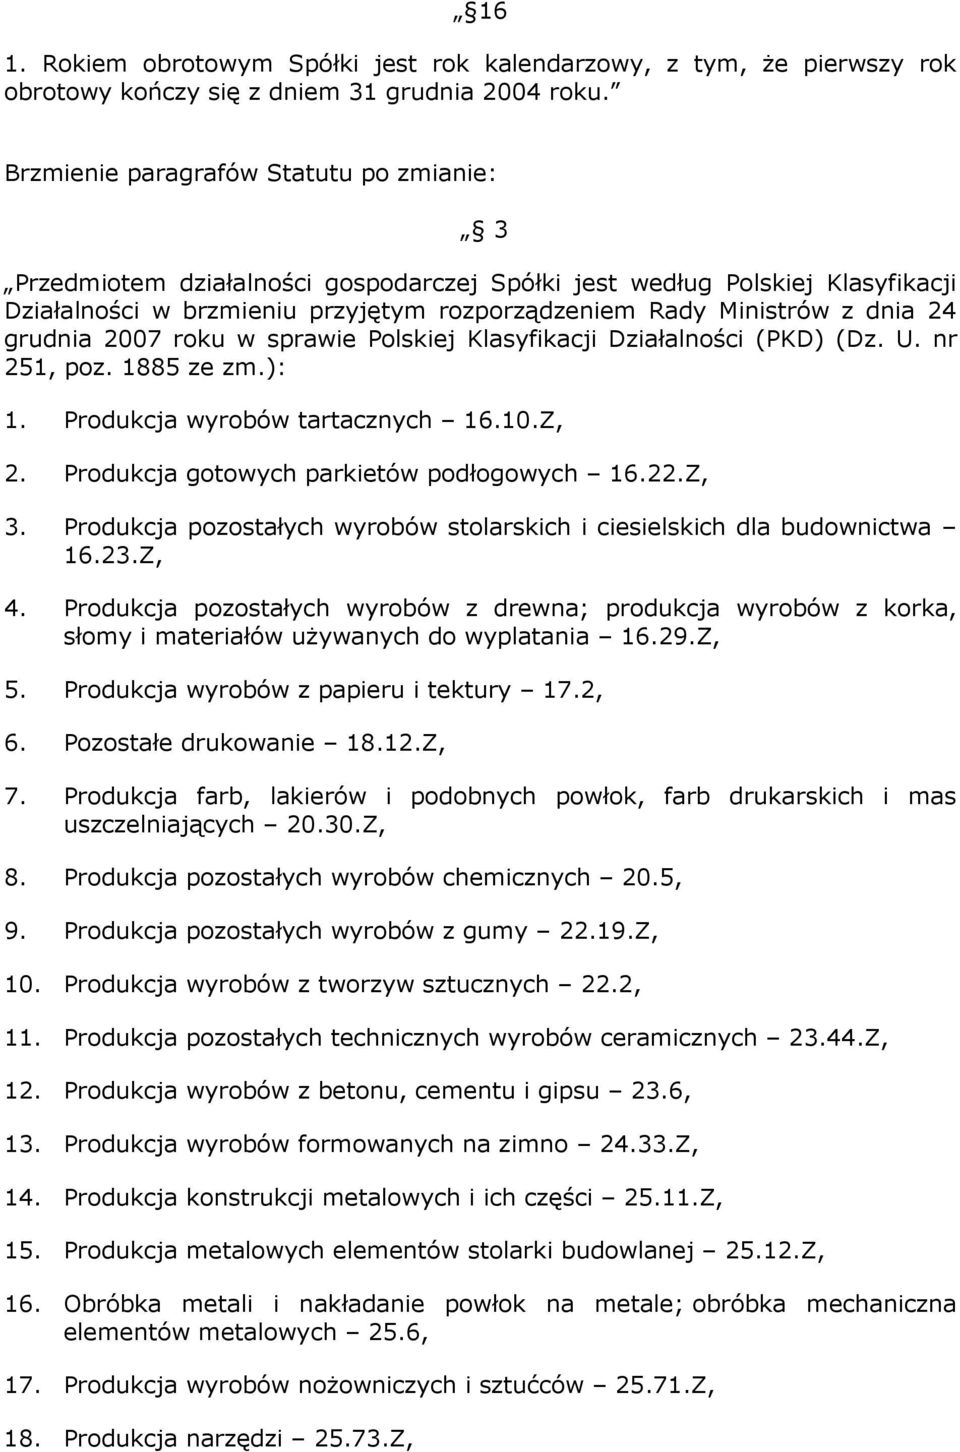 grudnia 2007 roku w sprawie Polskiej Klasyfikacji Działalności (PKD) (Dz. U. nr 251, poz. 1885 ze zm.): 1. Produkcja wyrobów tartacznych 16.10.Z, 2. Produkcja gotowych parkietów podłogowych 16.22.